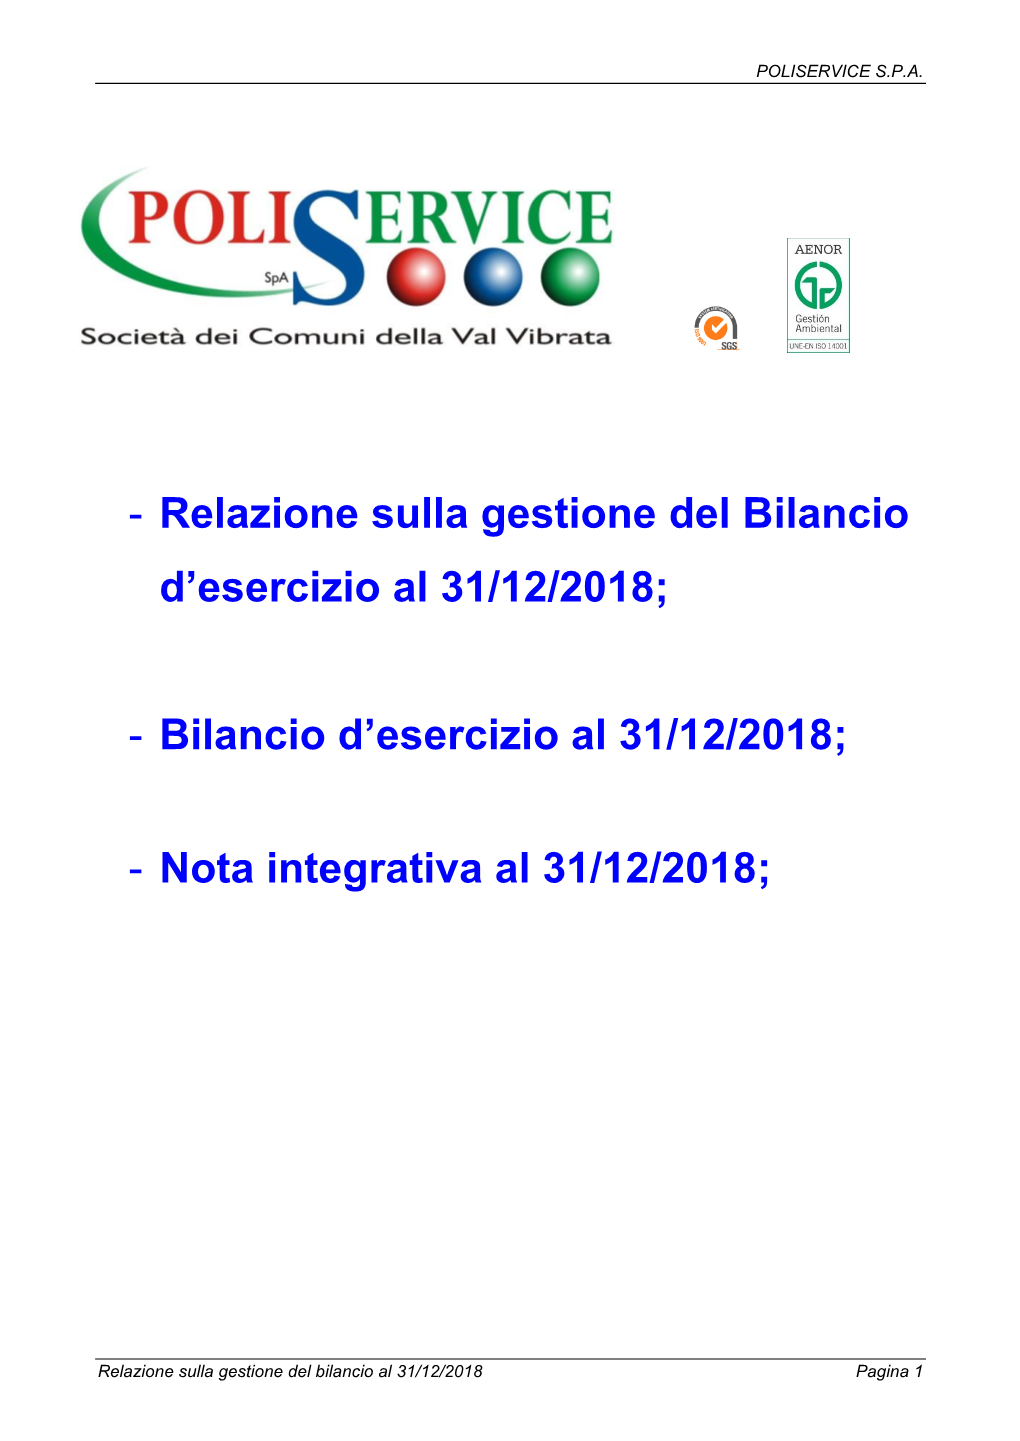 Relazione Sulla Gestione Del Bilancio D’Esercizio Al 31/12/2018;